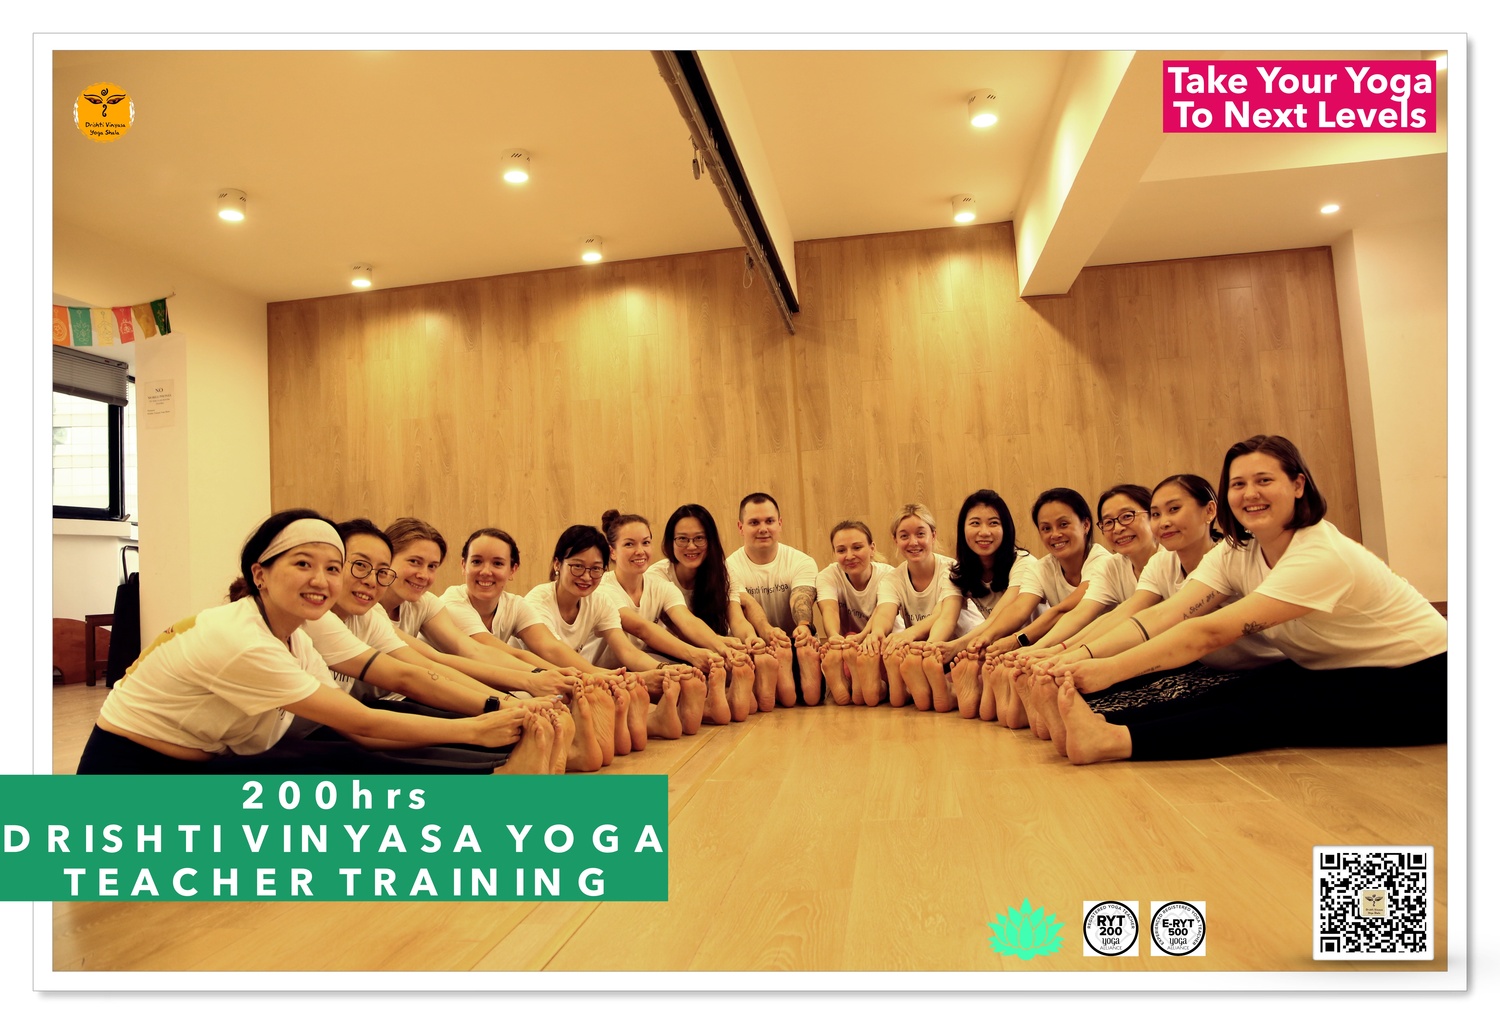 Drishti Vinyasa Yoga Teacher Training - Aug-Nov 2020 - Shanghai, China 3-p1.jpg